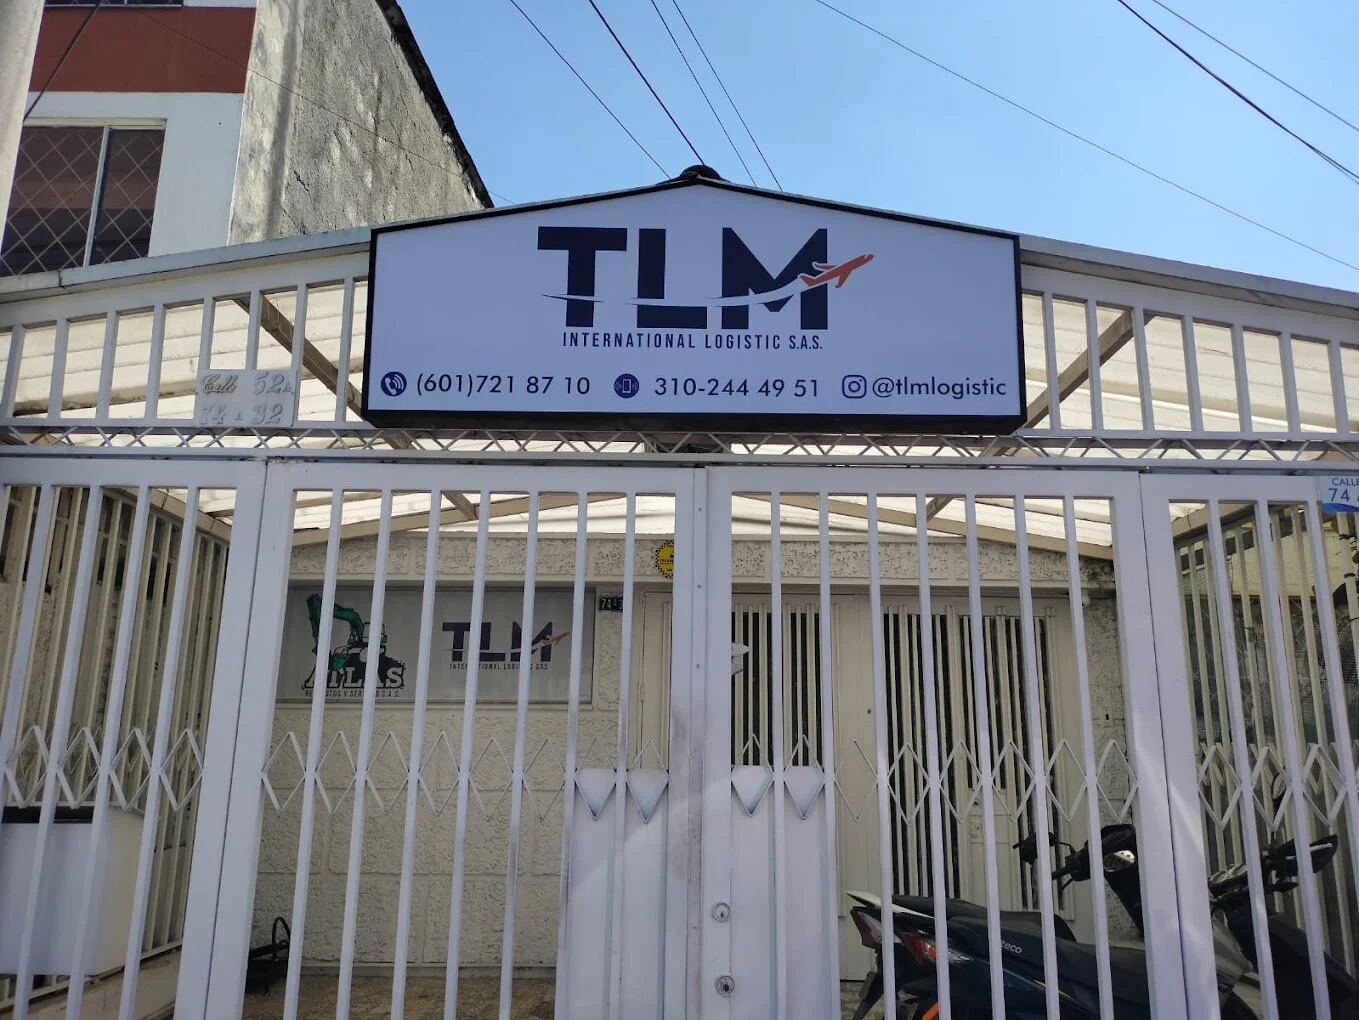 TLM envíos internacionales Bogotá-10915